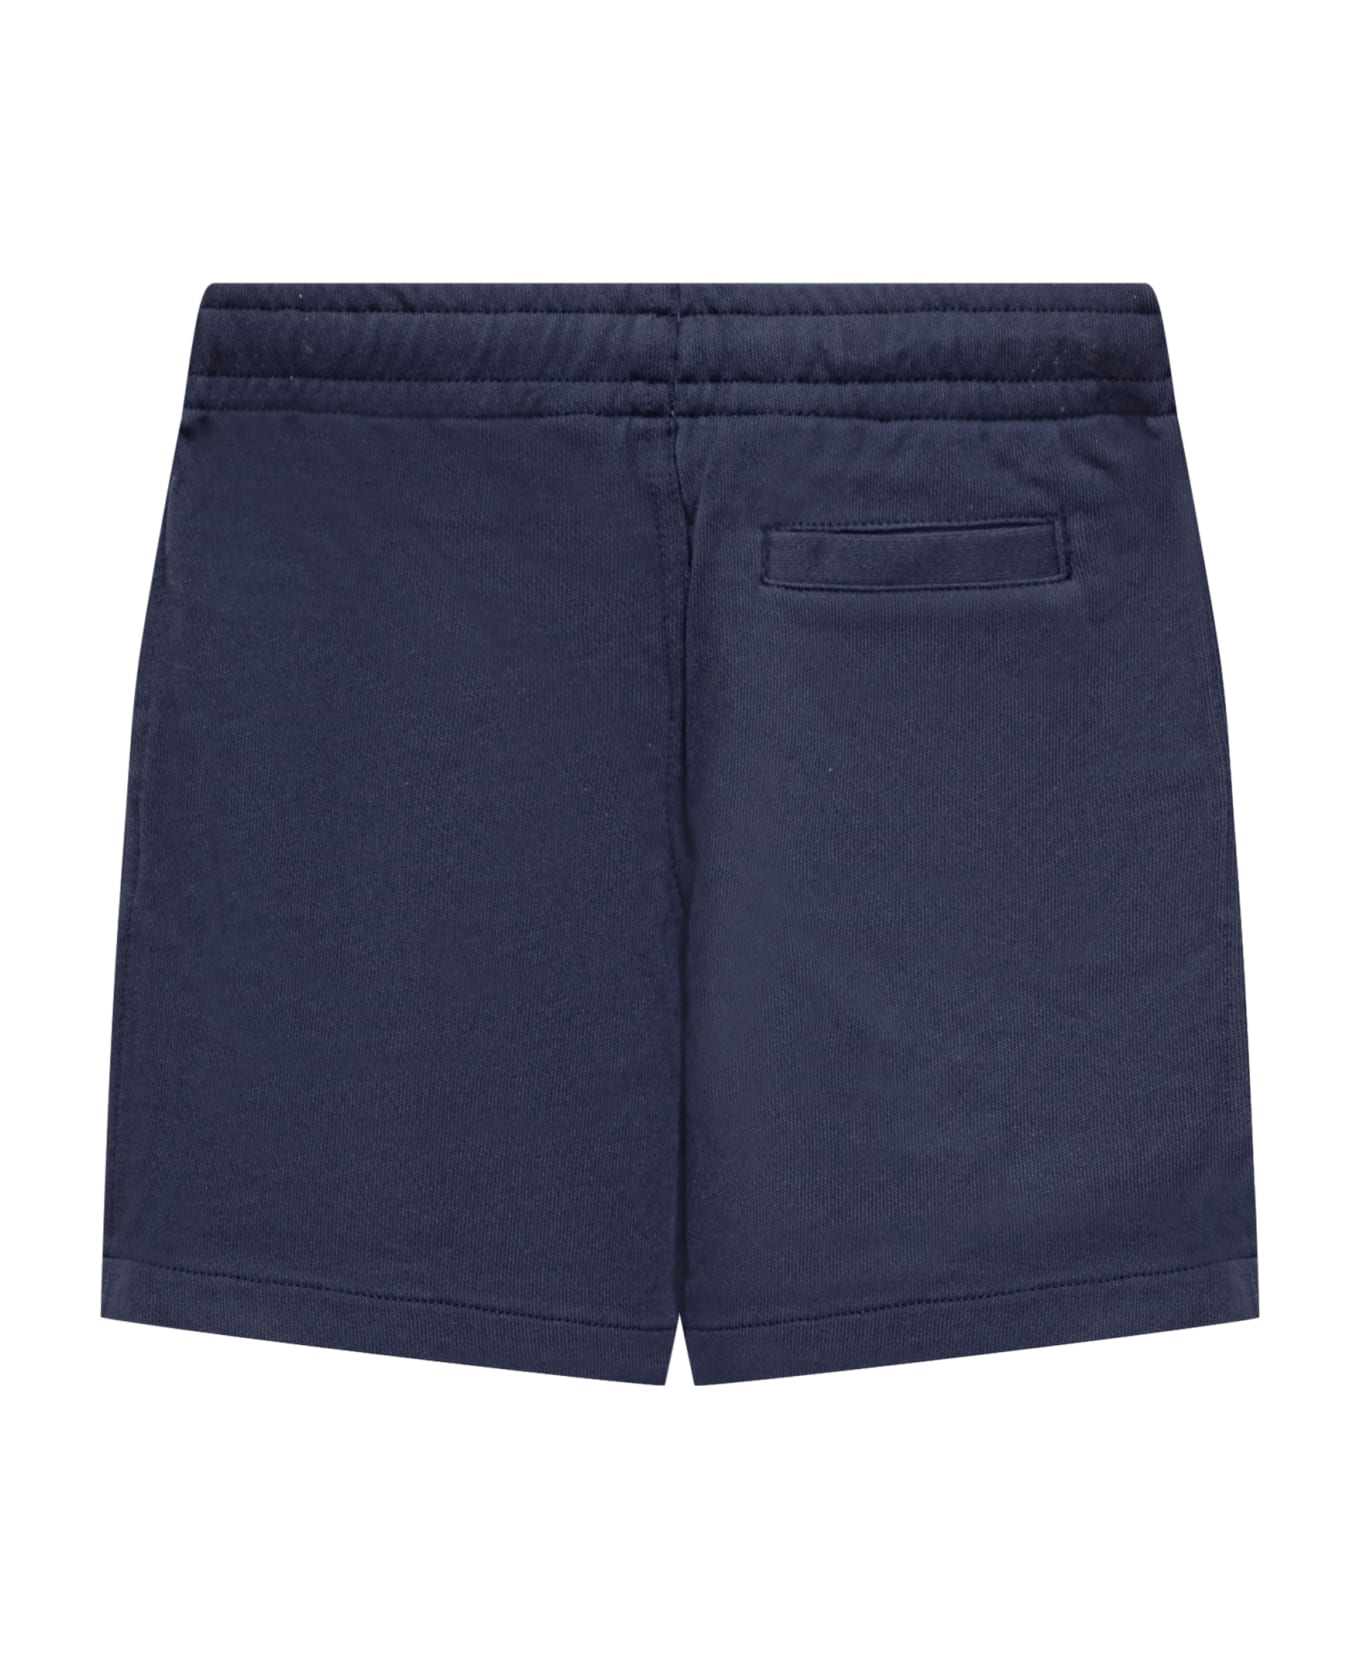 Polo Ralph Lauren Logo Shorts - NEWPORT NAVY